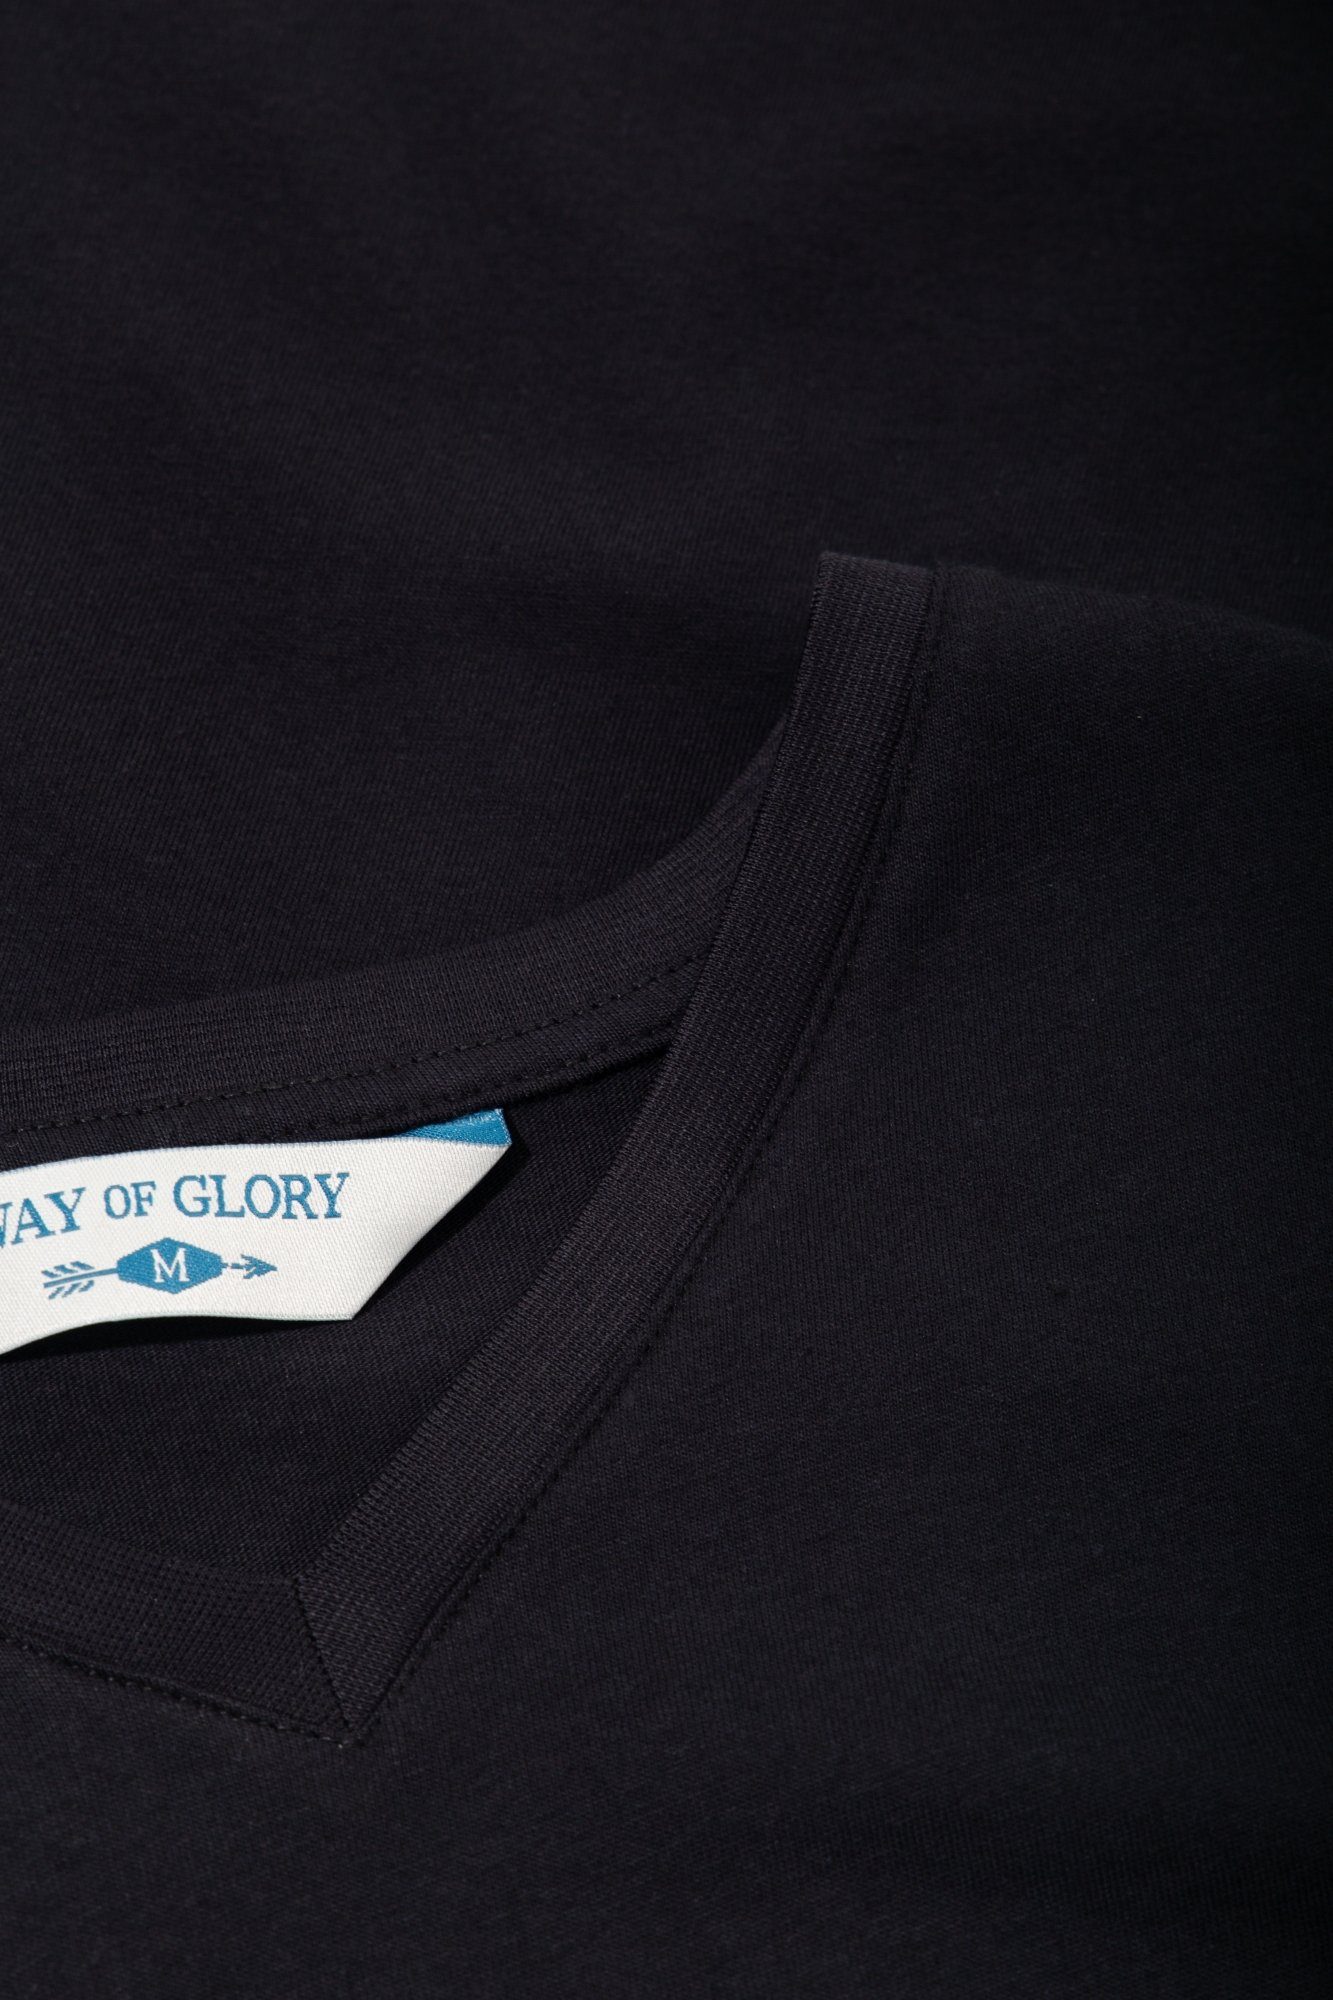 Glory mit Way V-Ausschnitt of T-Shirt schwarz